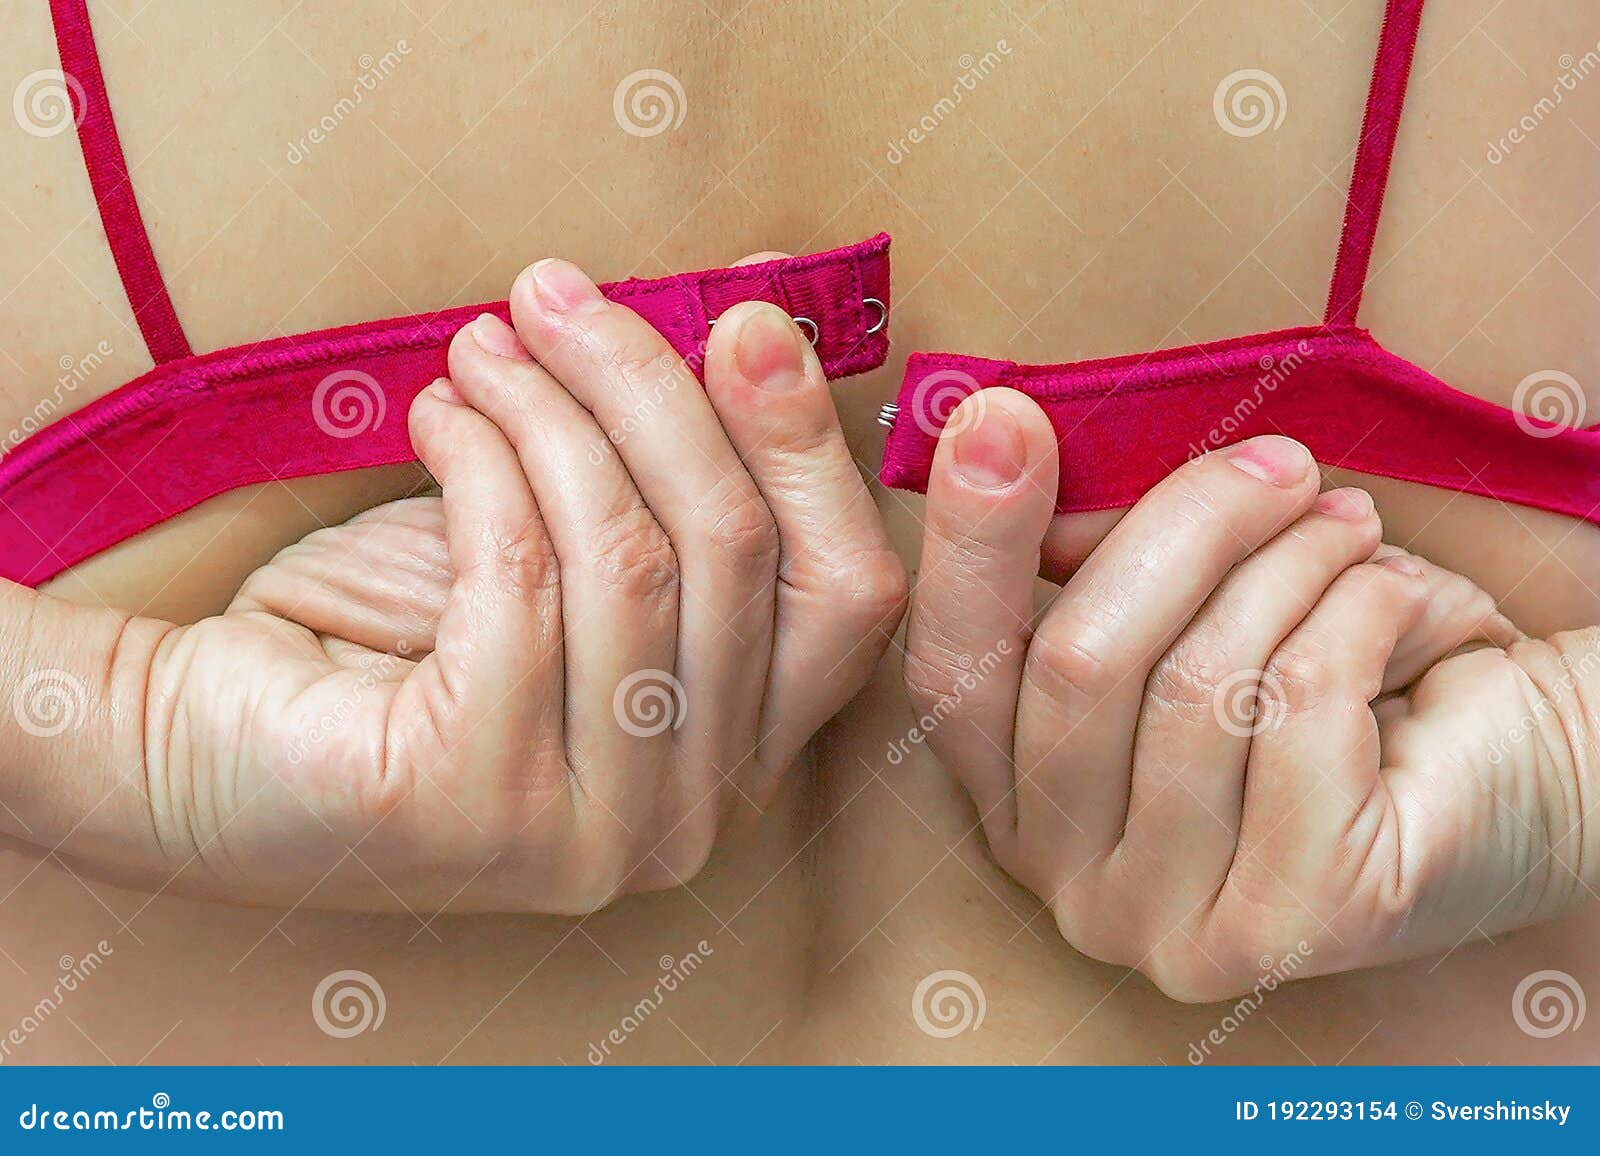 female hands unfasten the red bra